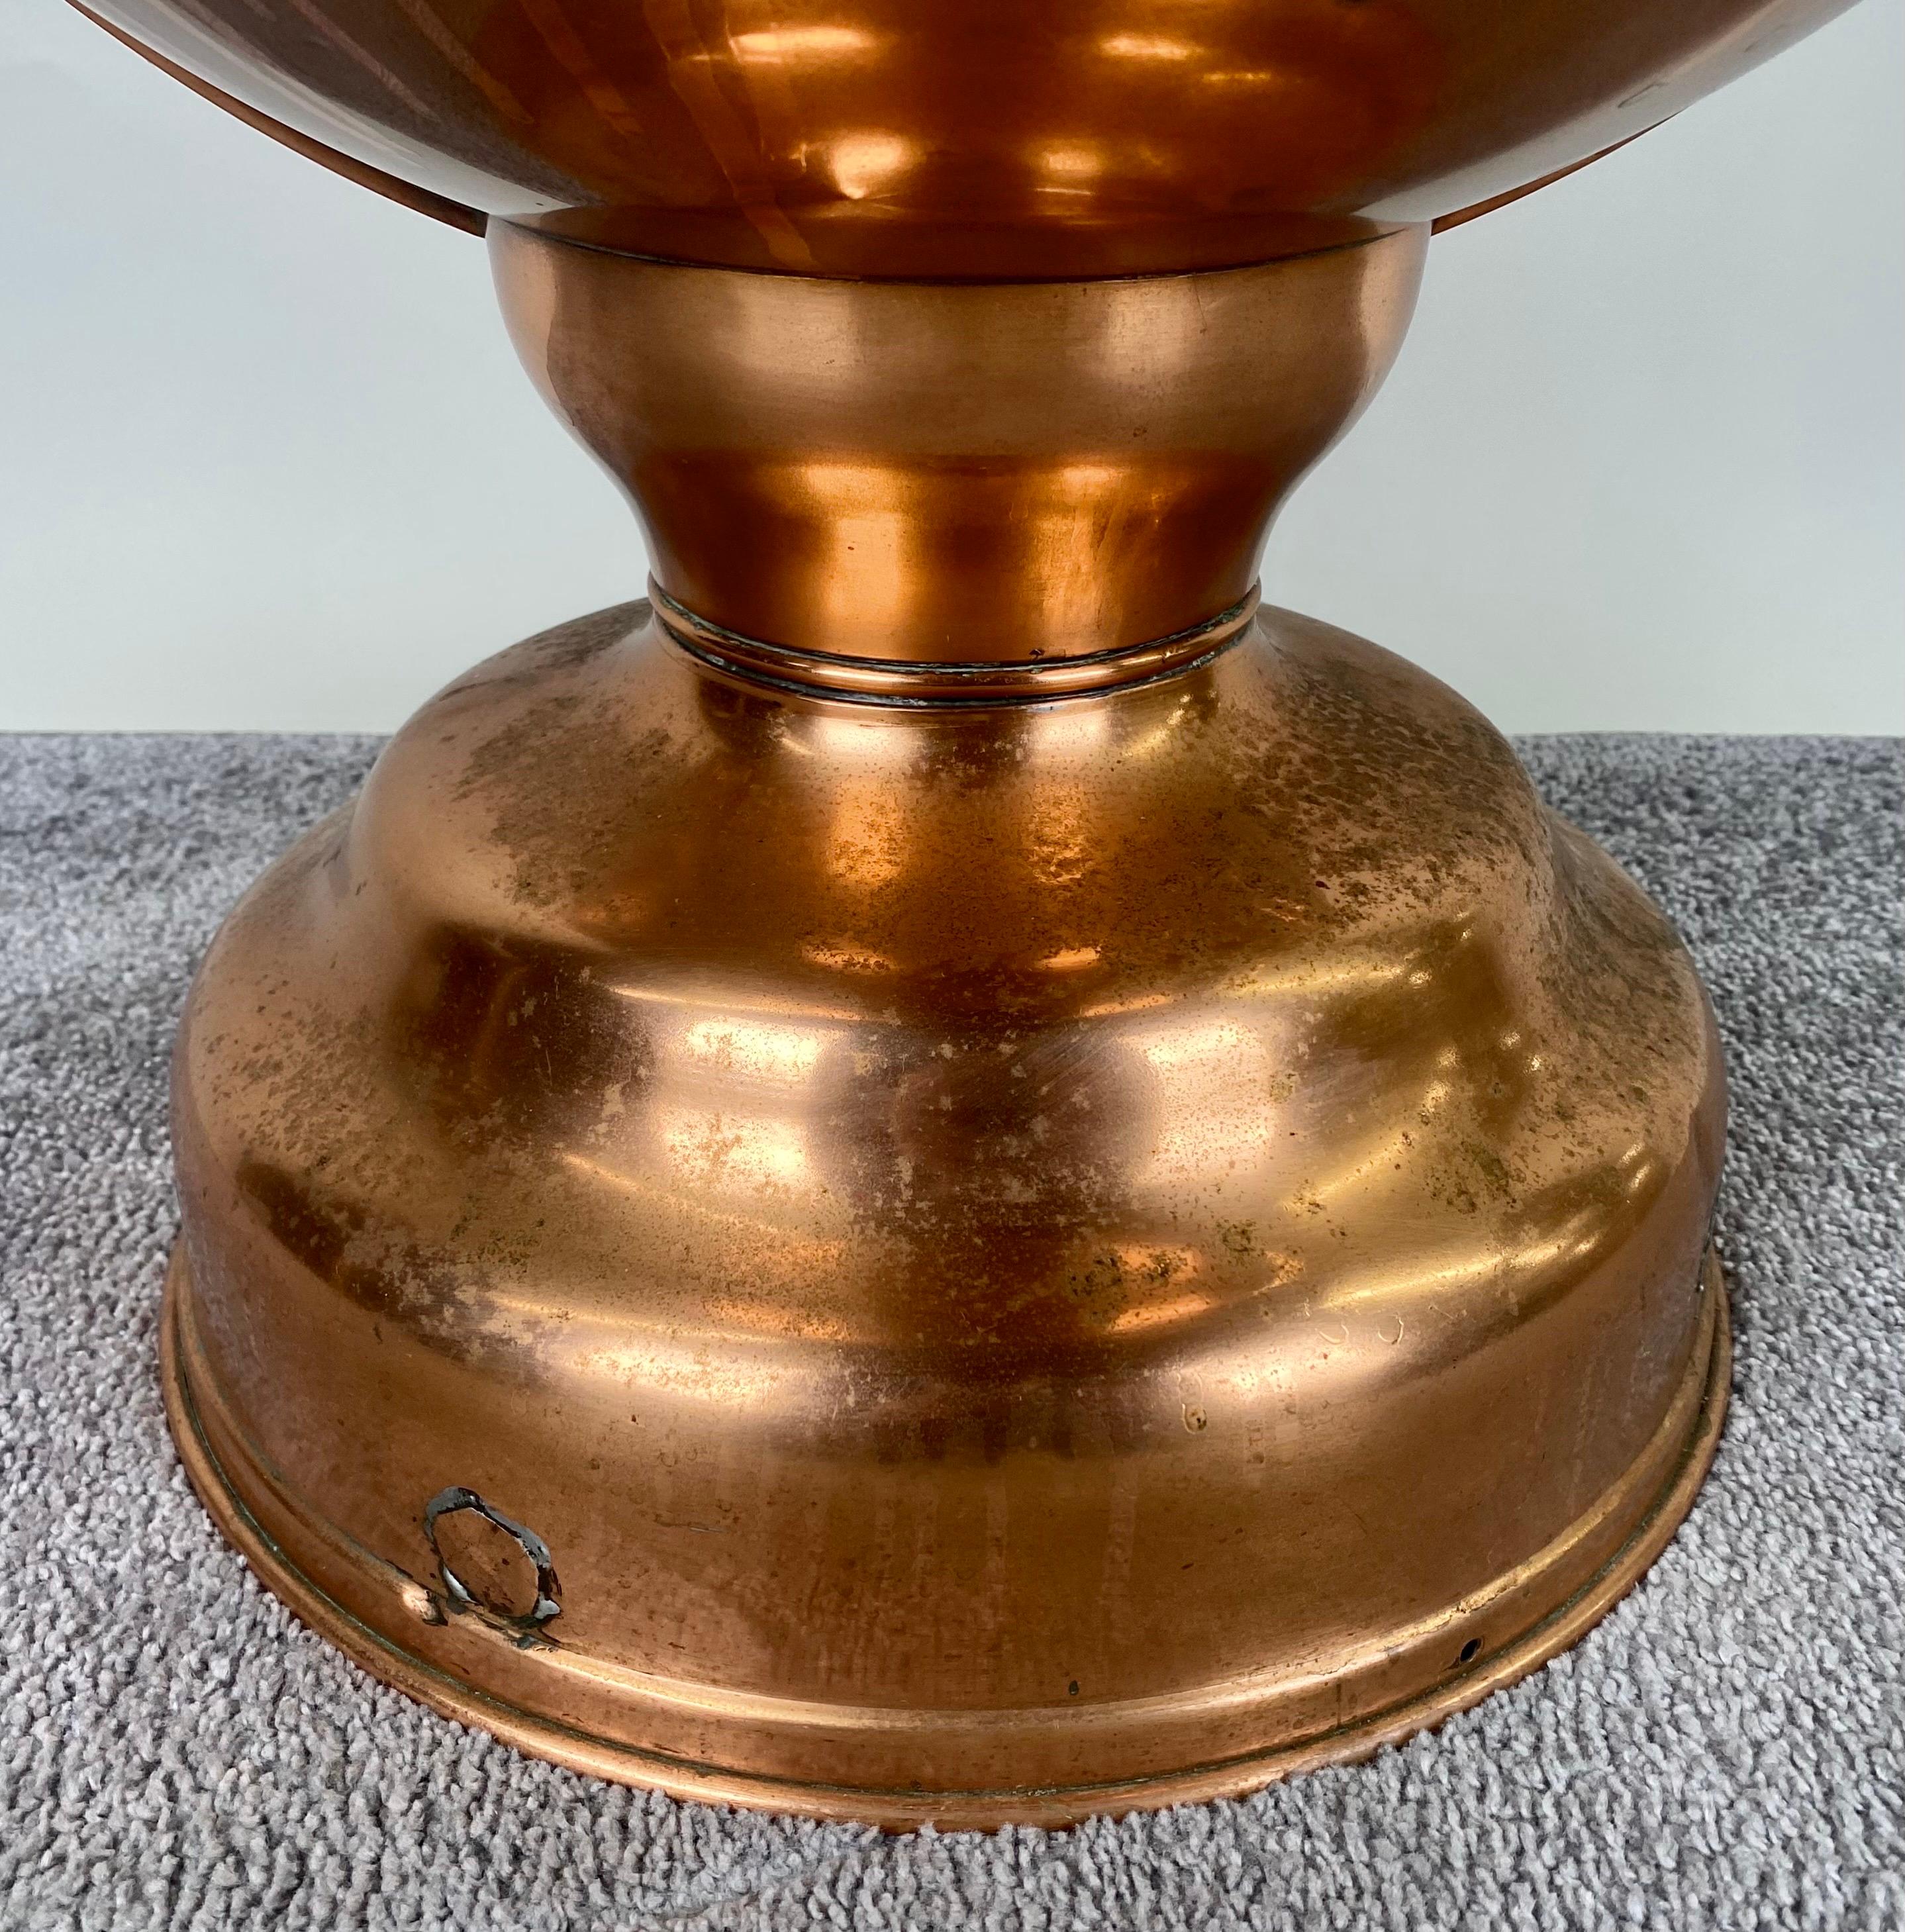 Ein Globe-Kupferkübel aus dem frühen 20. Jahrhundert, eine reizvolle Verbindung von Funktionalität und Vintage-Eleganz.  Die originalen Messingbeschläge verleihen diesem exquisiten Stück einen Hauch von Authentizität und machen es zeitlos